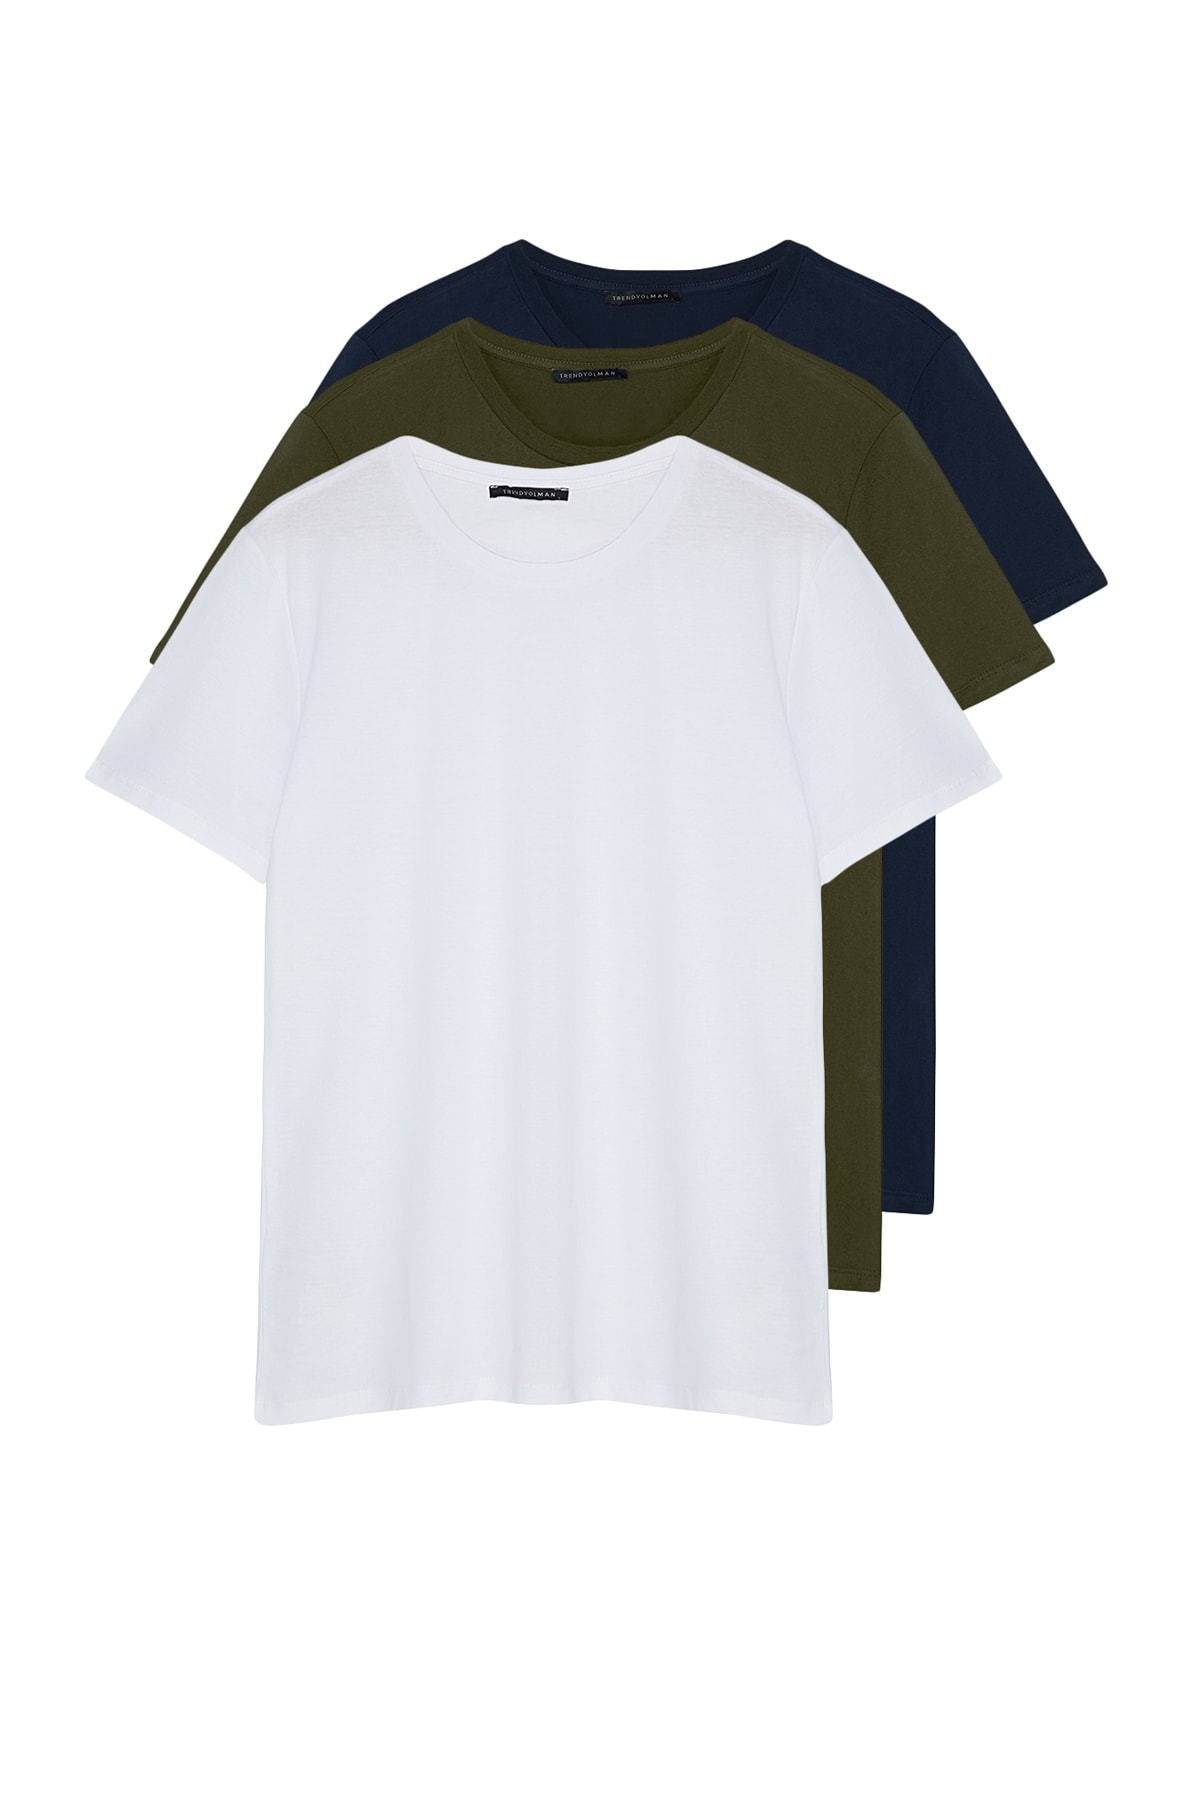 Trendyol Navy Blue-Khaki-White Men's Basic Slim 100% Cotton 3-Pack Short Sleeved T-Shirt